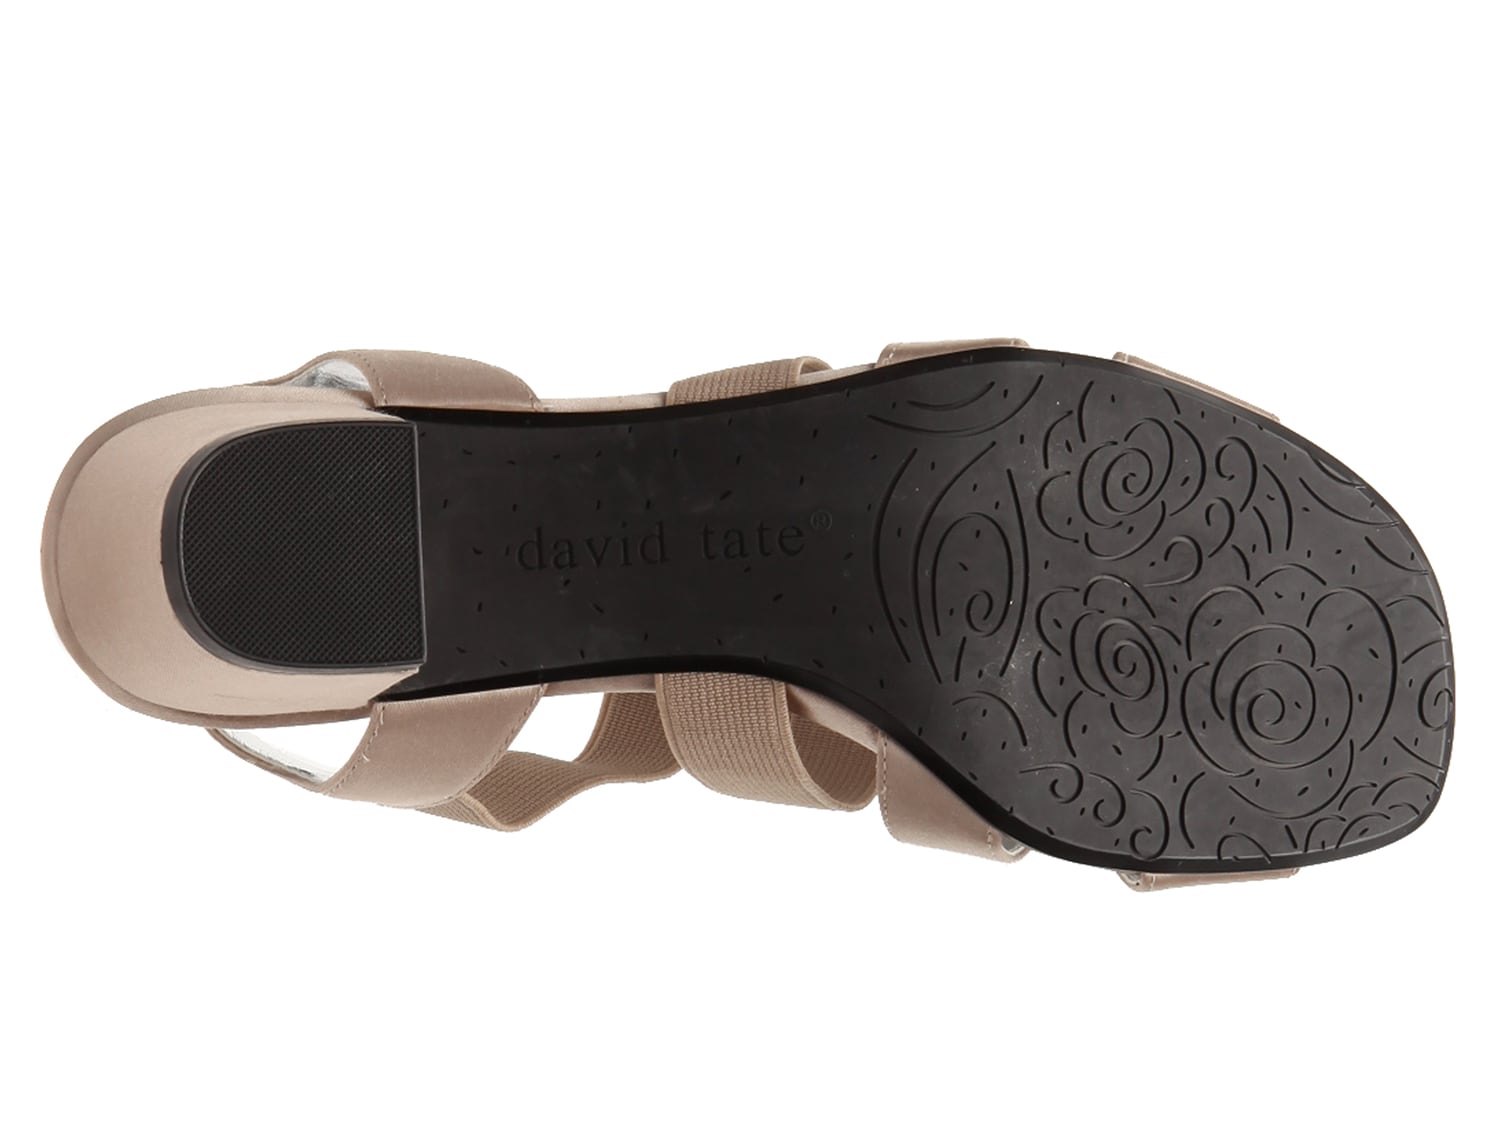 david tate event gladiator sandal